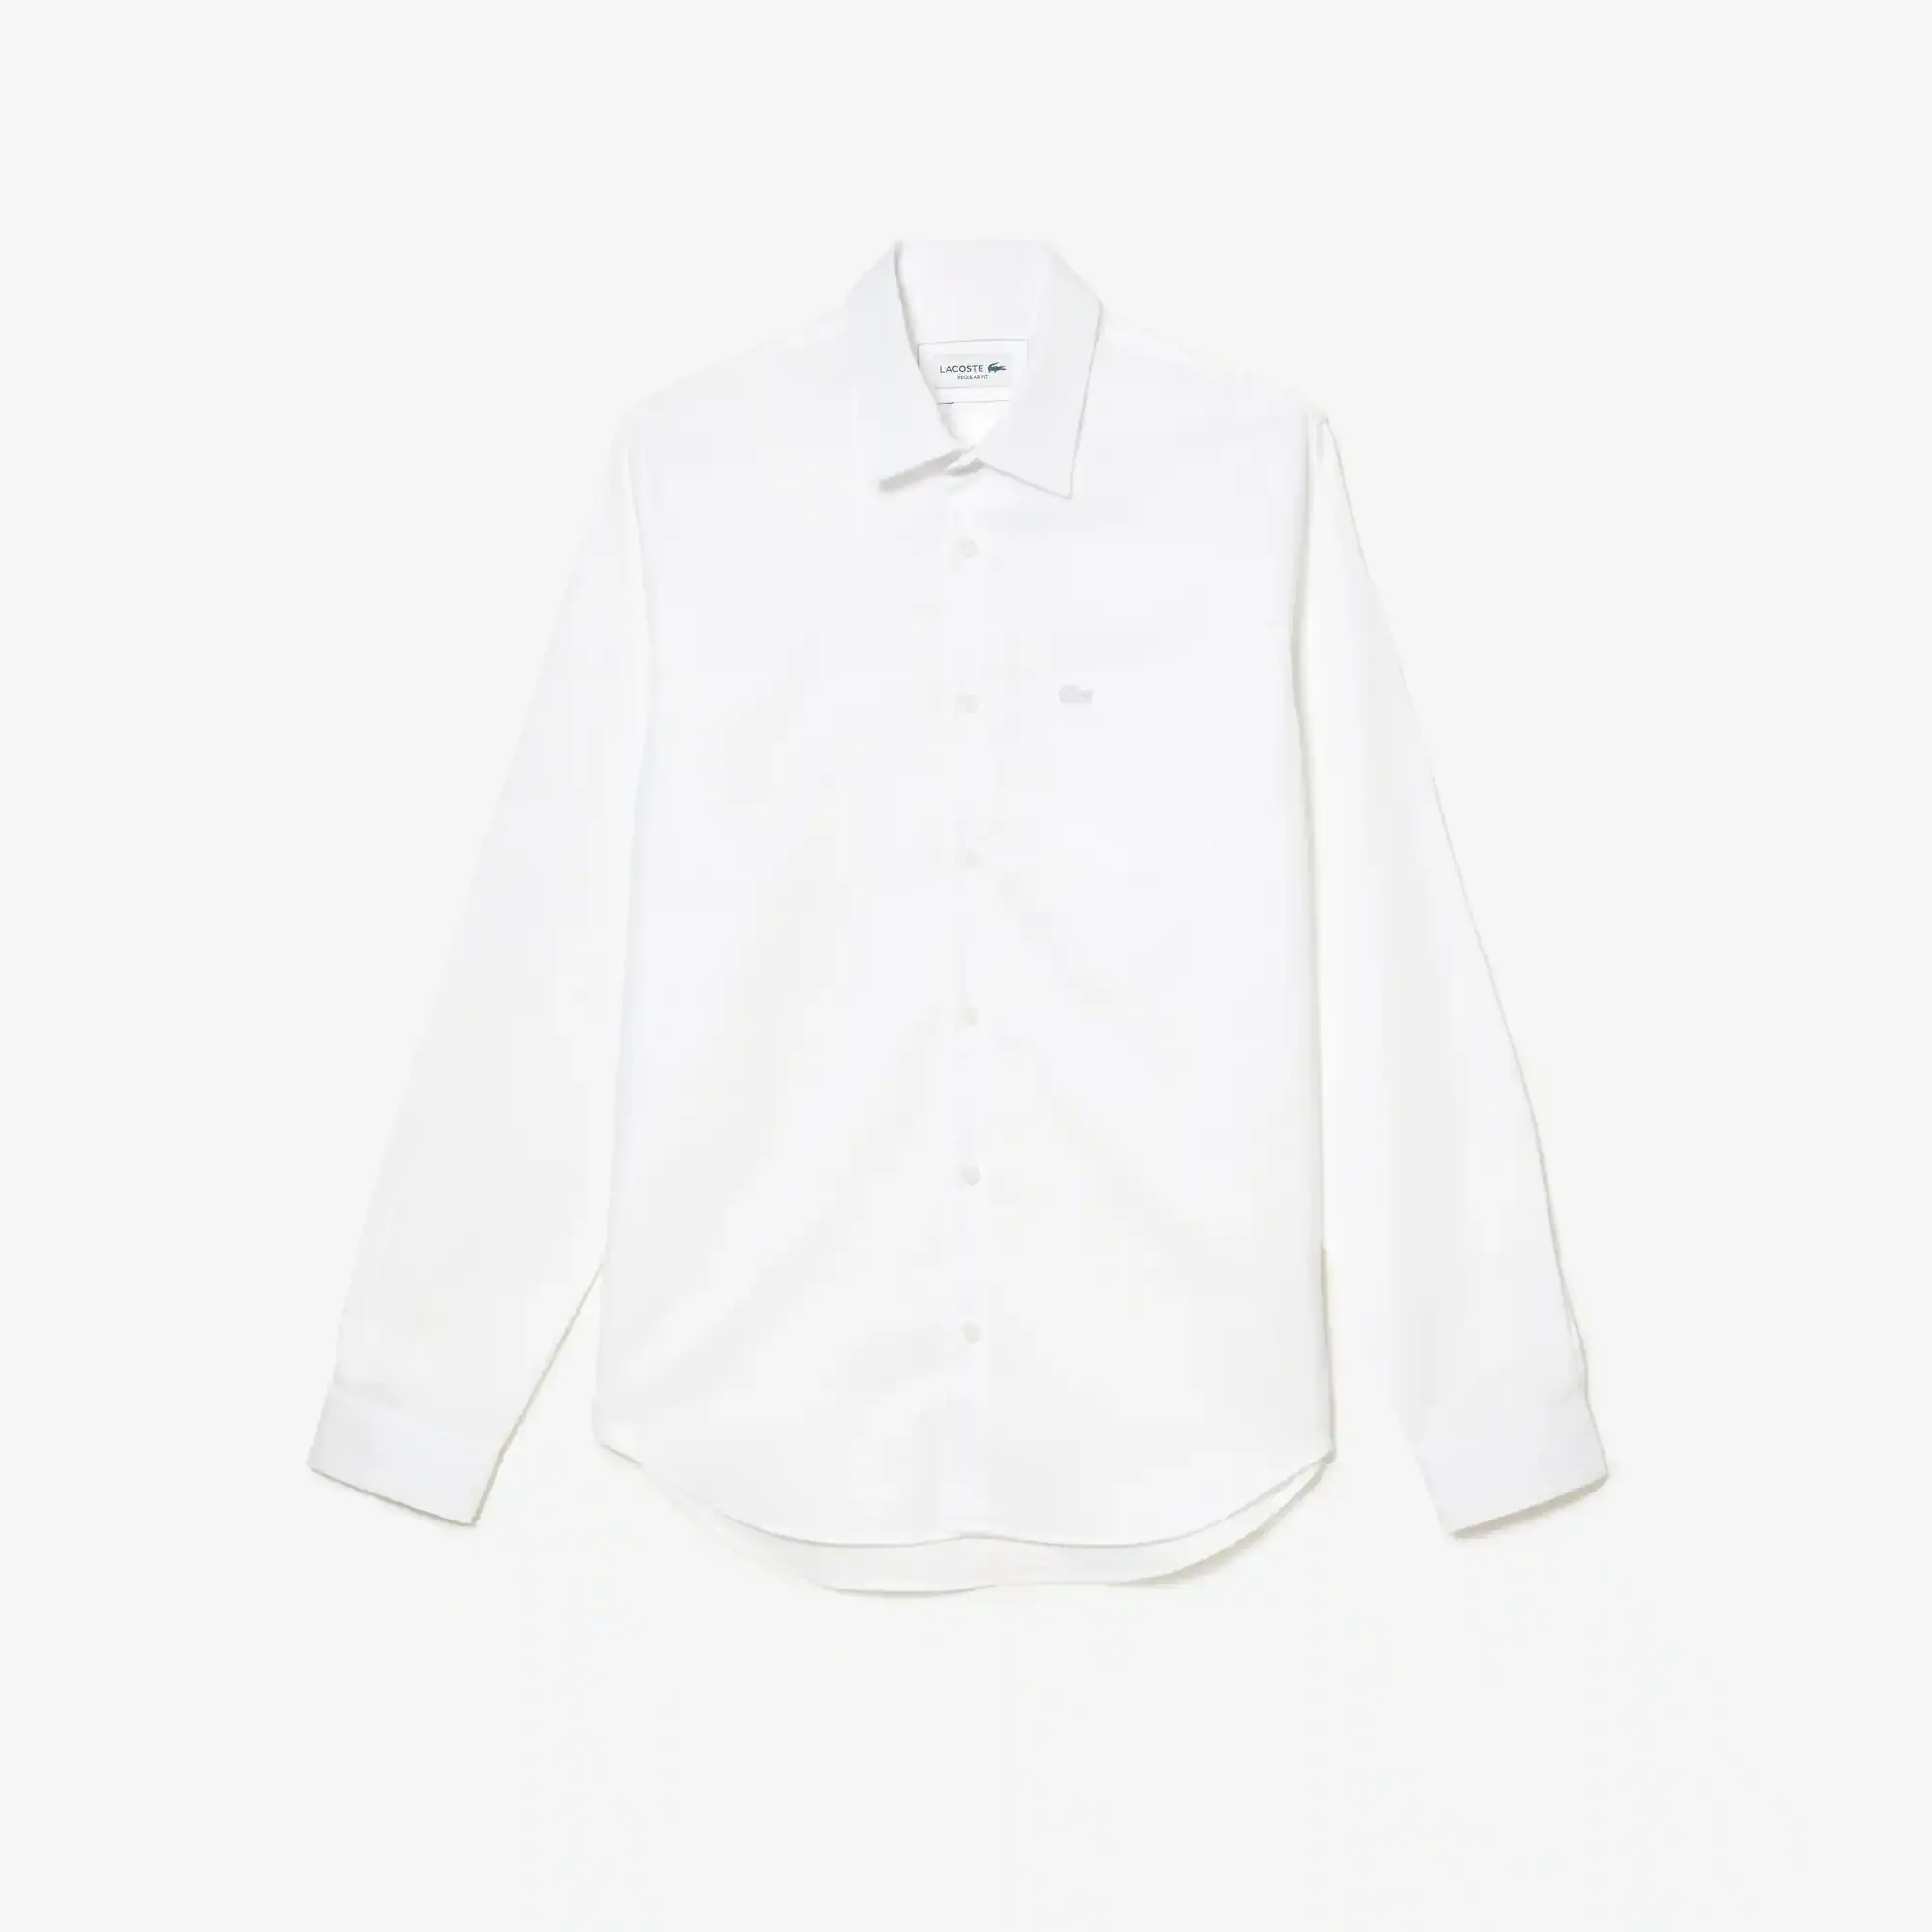 Lacoste Men's Regular Fit Solid Cotton Shirt. 2